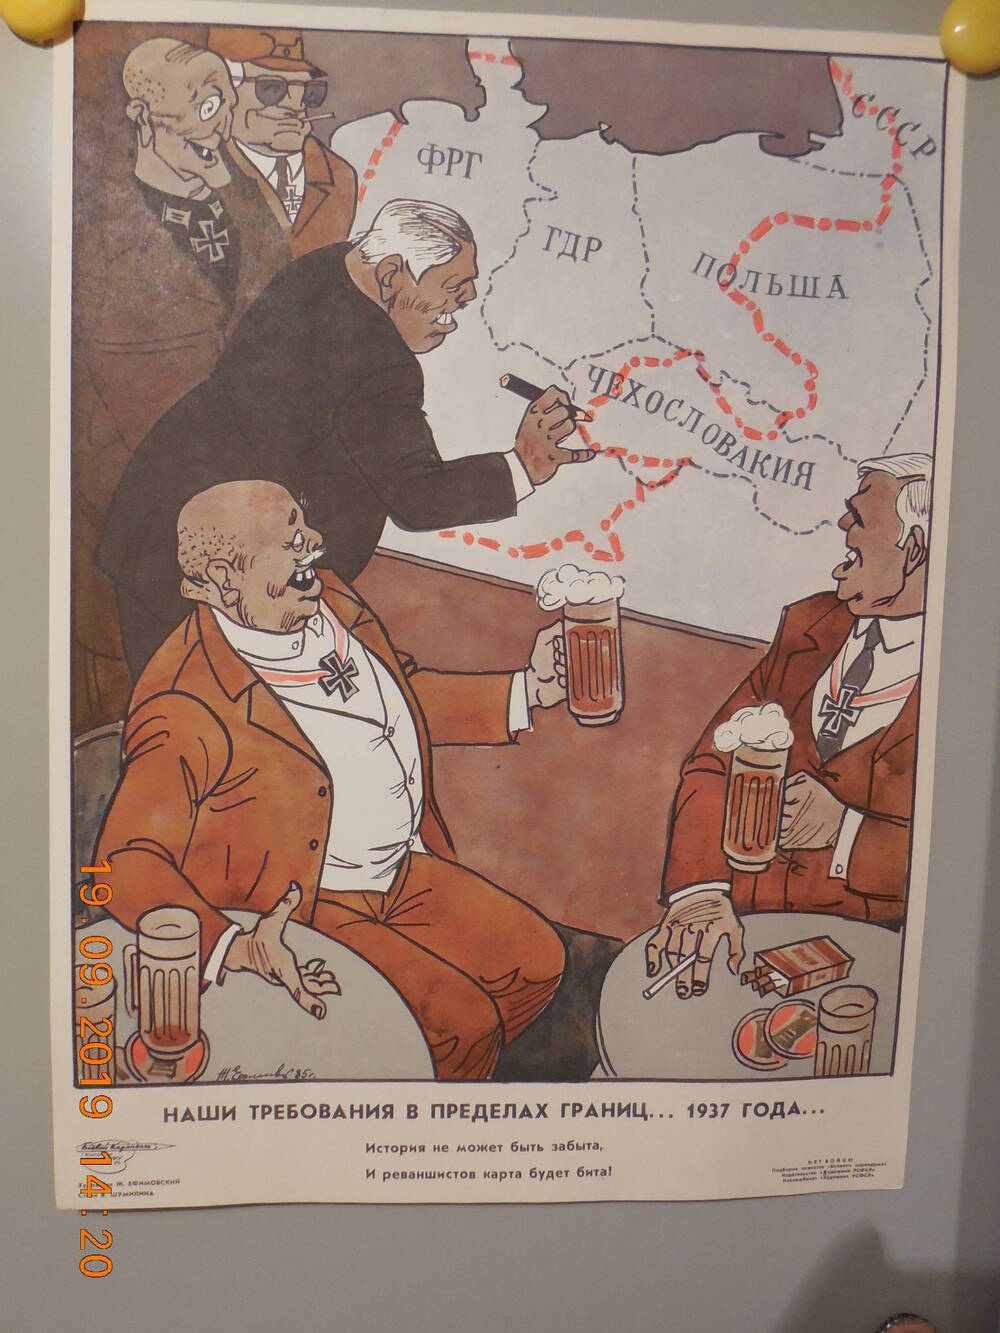 Плакат из подборки сатирических плакатов творческого объединения Боевой карандаш НЕТ ВОЙНЕ
Наши требования в пределах границ...1937 года